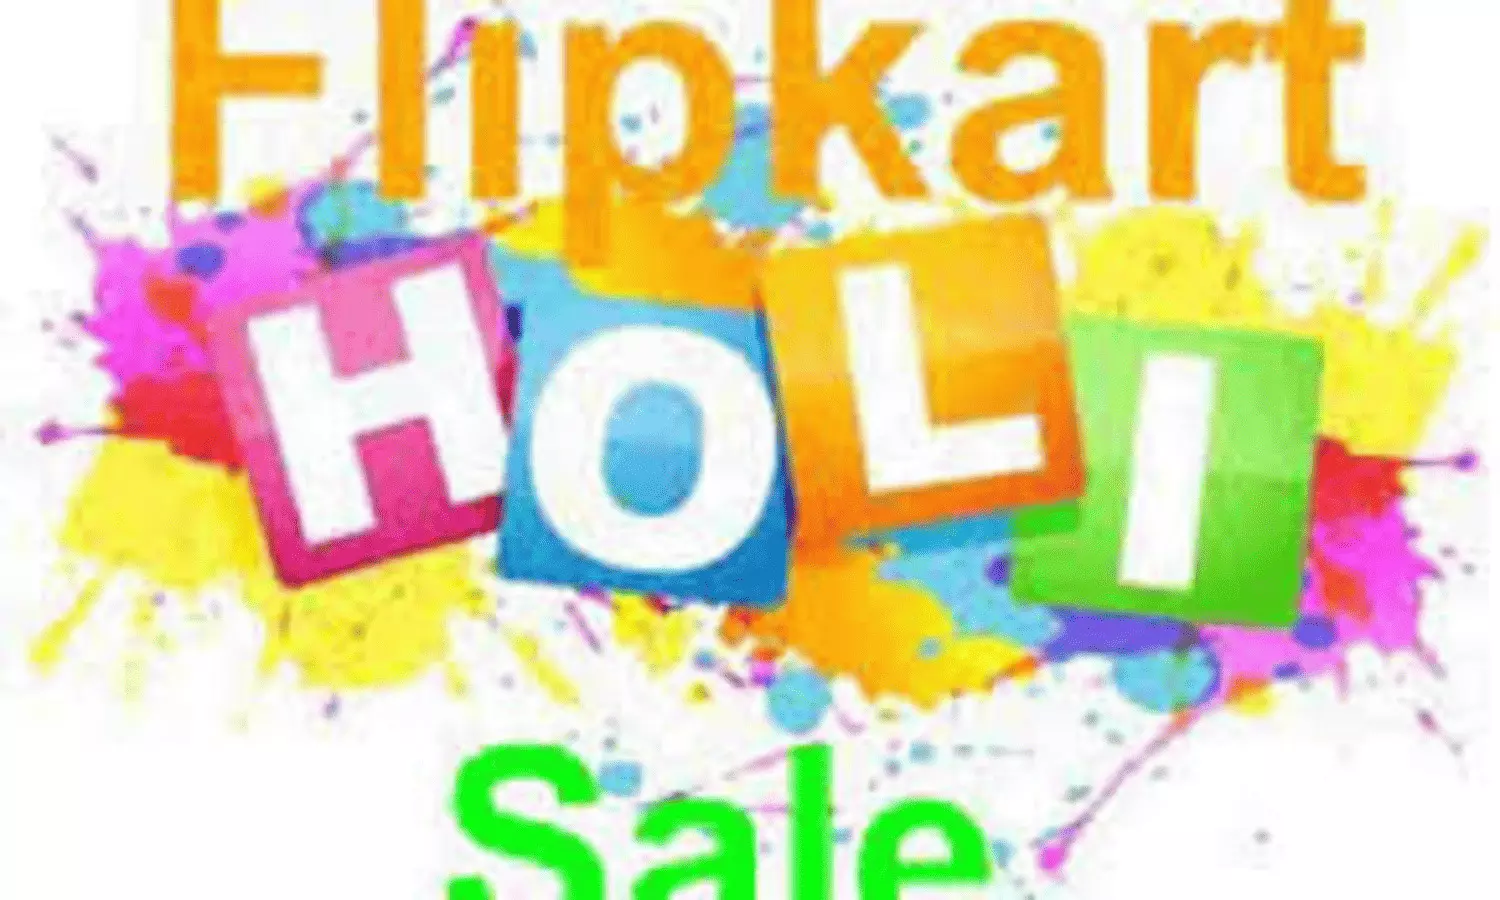 Flipkart Holi Sale 2023